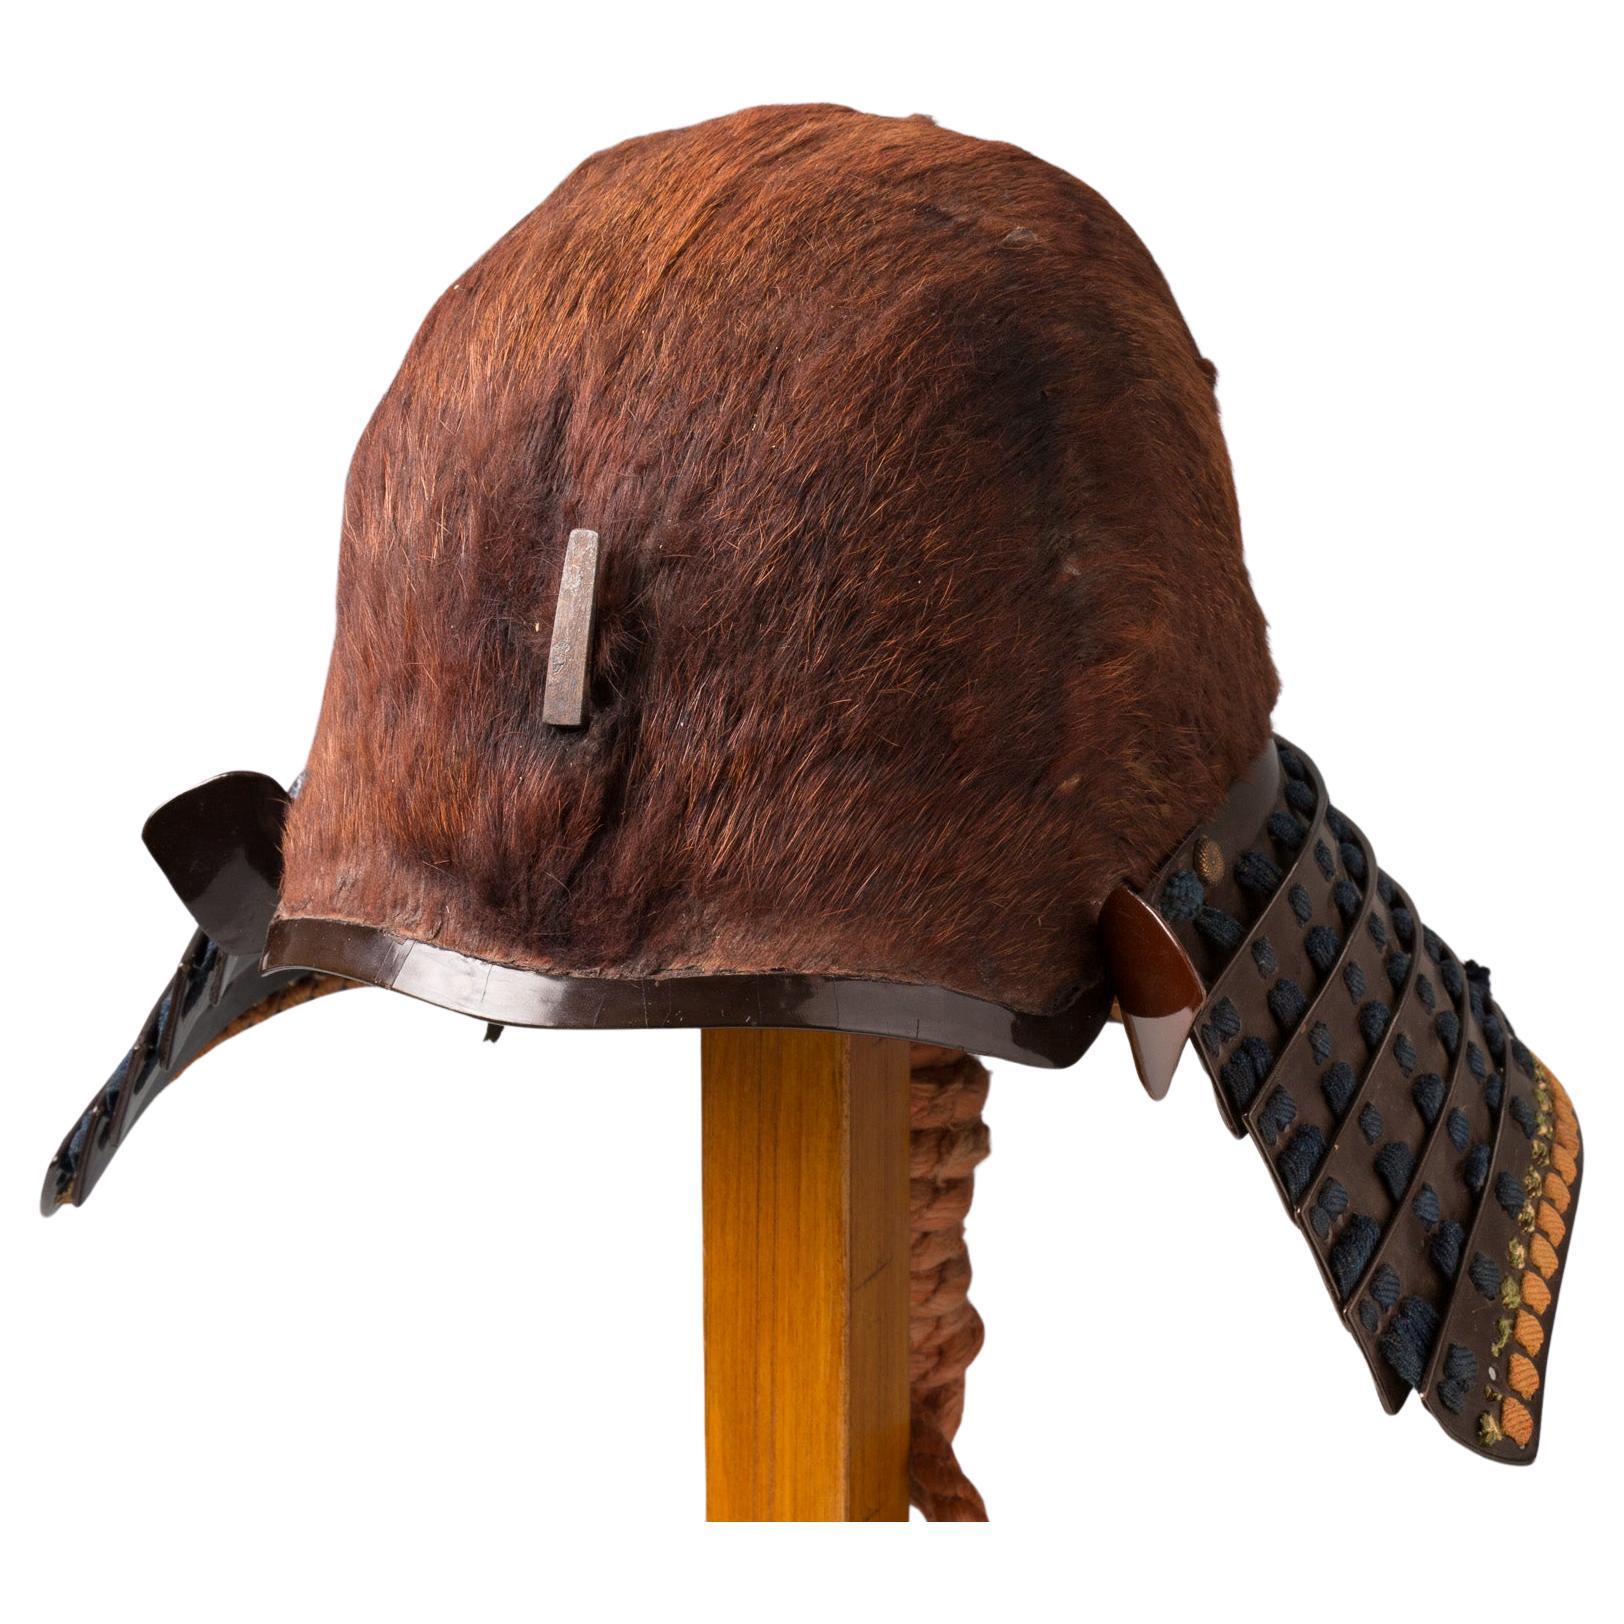 Sogonari Kabuto
Samurai-Helm in Form eines menschlichen Kopfes

Frühe Edo-Periode (1615 - 1867).

 

Kawari kabuto mit drei Platten, die mit gelbbraunem Haar bedeckt sind und einem menschlichen Kopf ähneln.

Samurai-Helme mit dieser Form